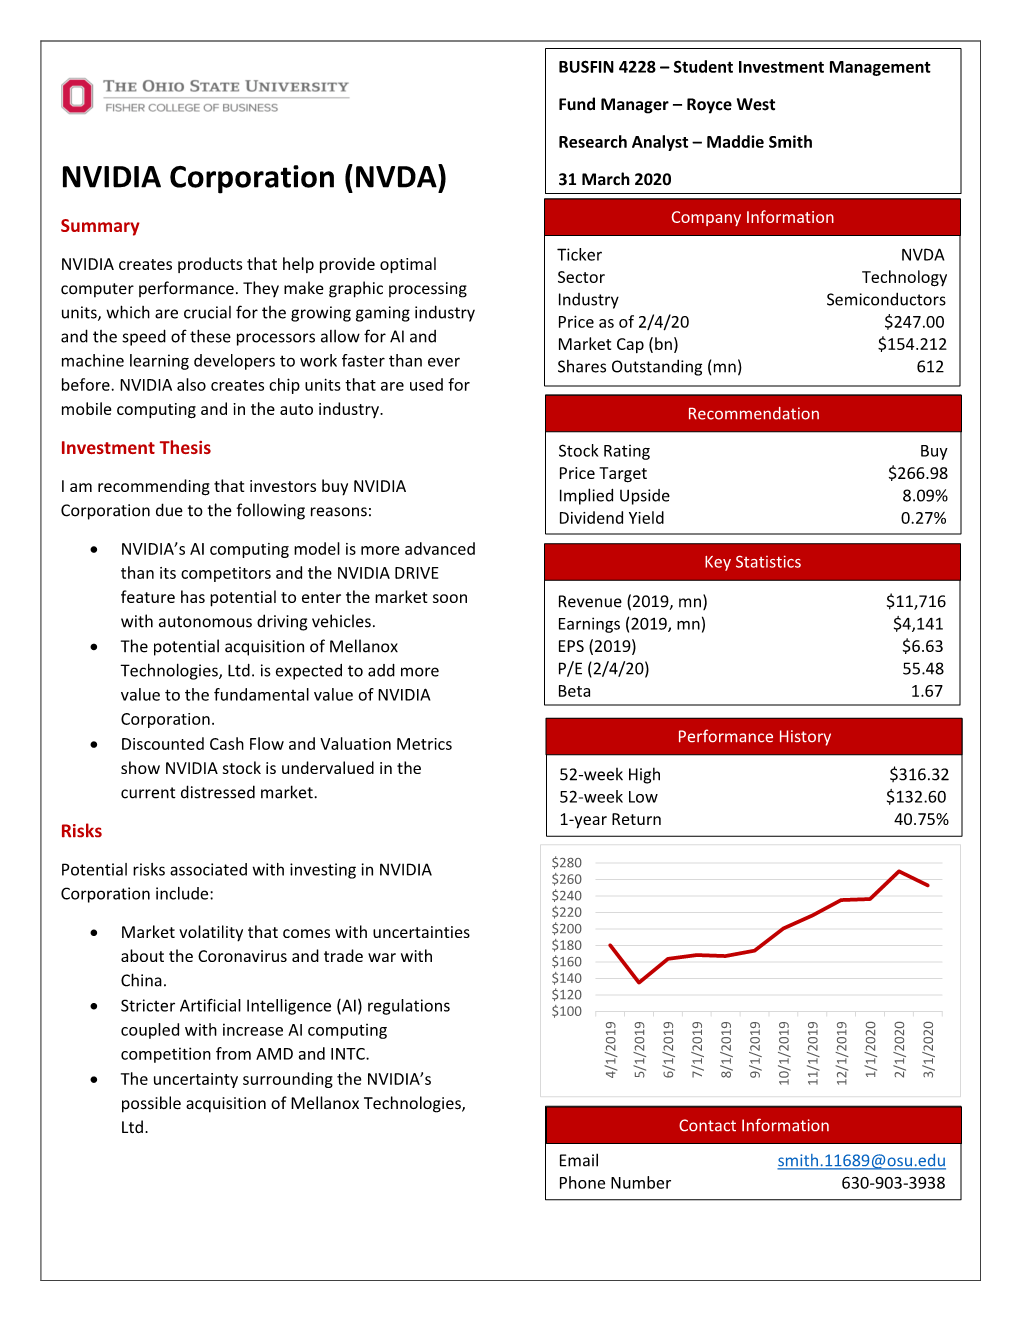 NVIDIA Corporation (NVDA) 31 March 2020